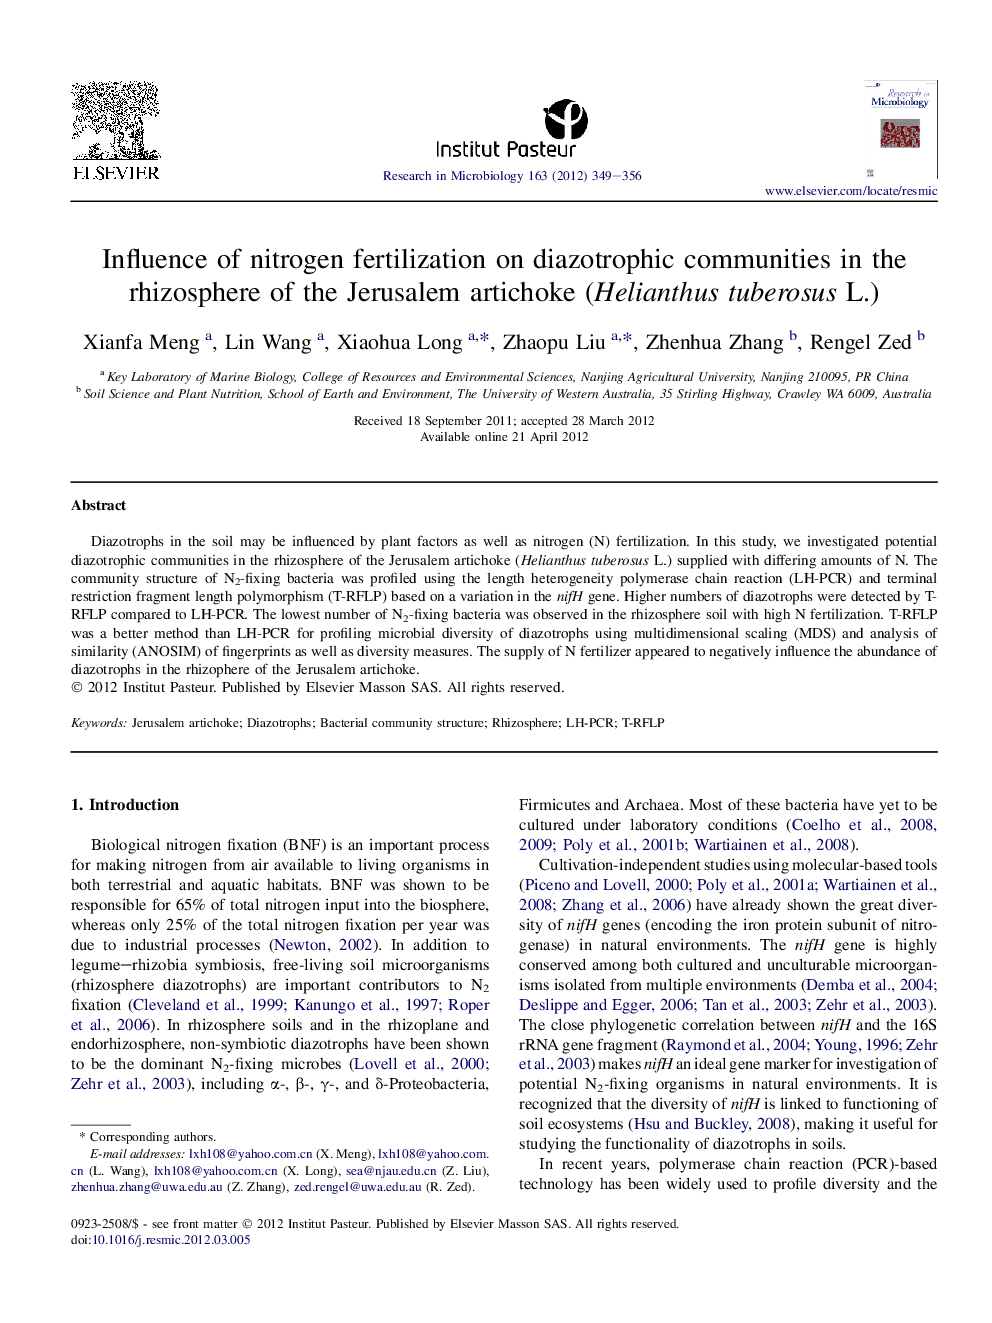 Influence of nitrogen fertilization on diazotrophic communities in the rhizosphere of the Jerusalem artichoke (Helianthus tuberosus L.)